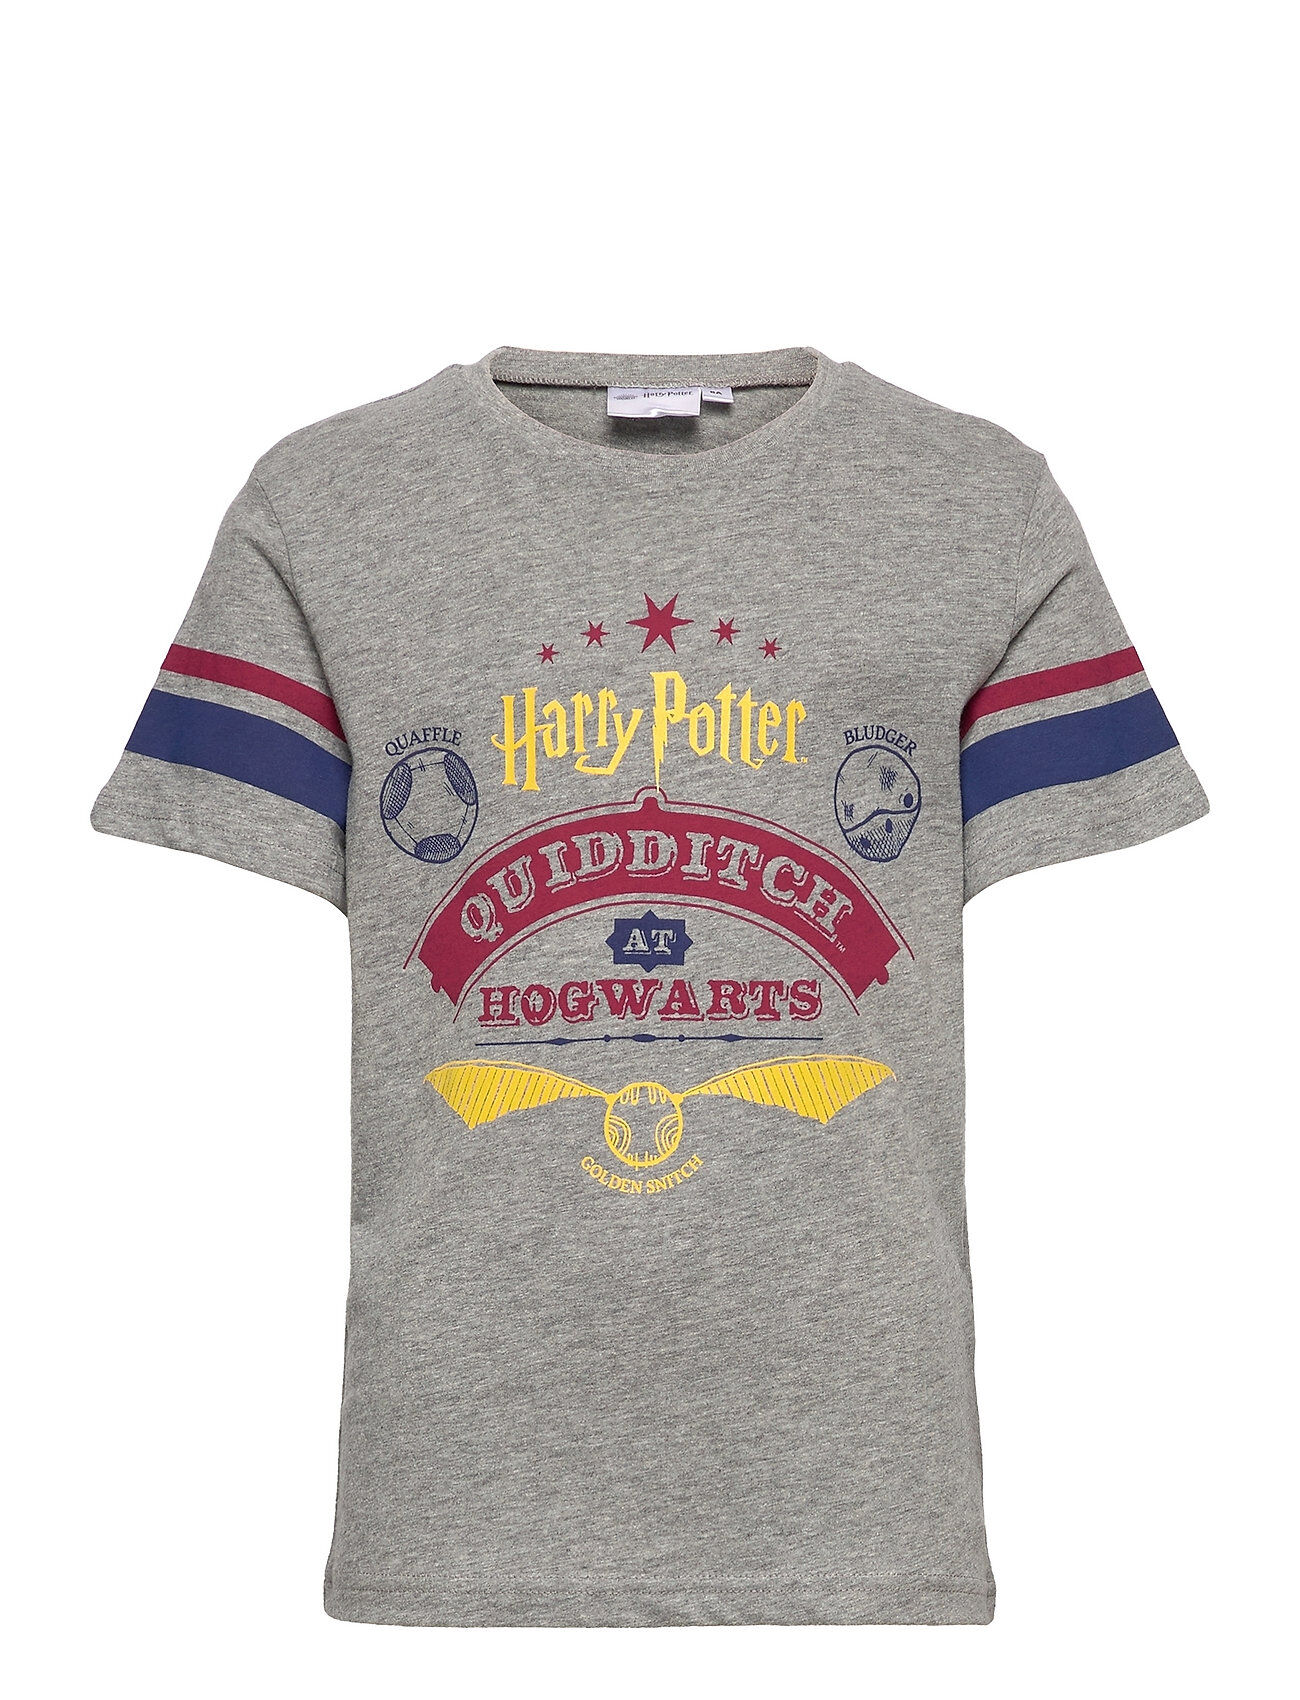 Harry Potter Tshirt T-shirts Short-sleeved Grå Harry Potter